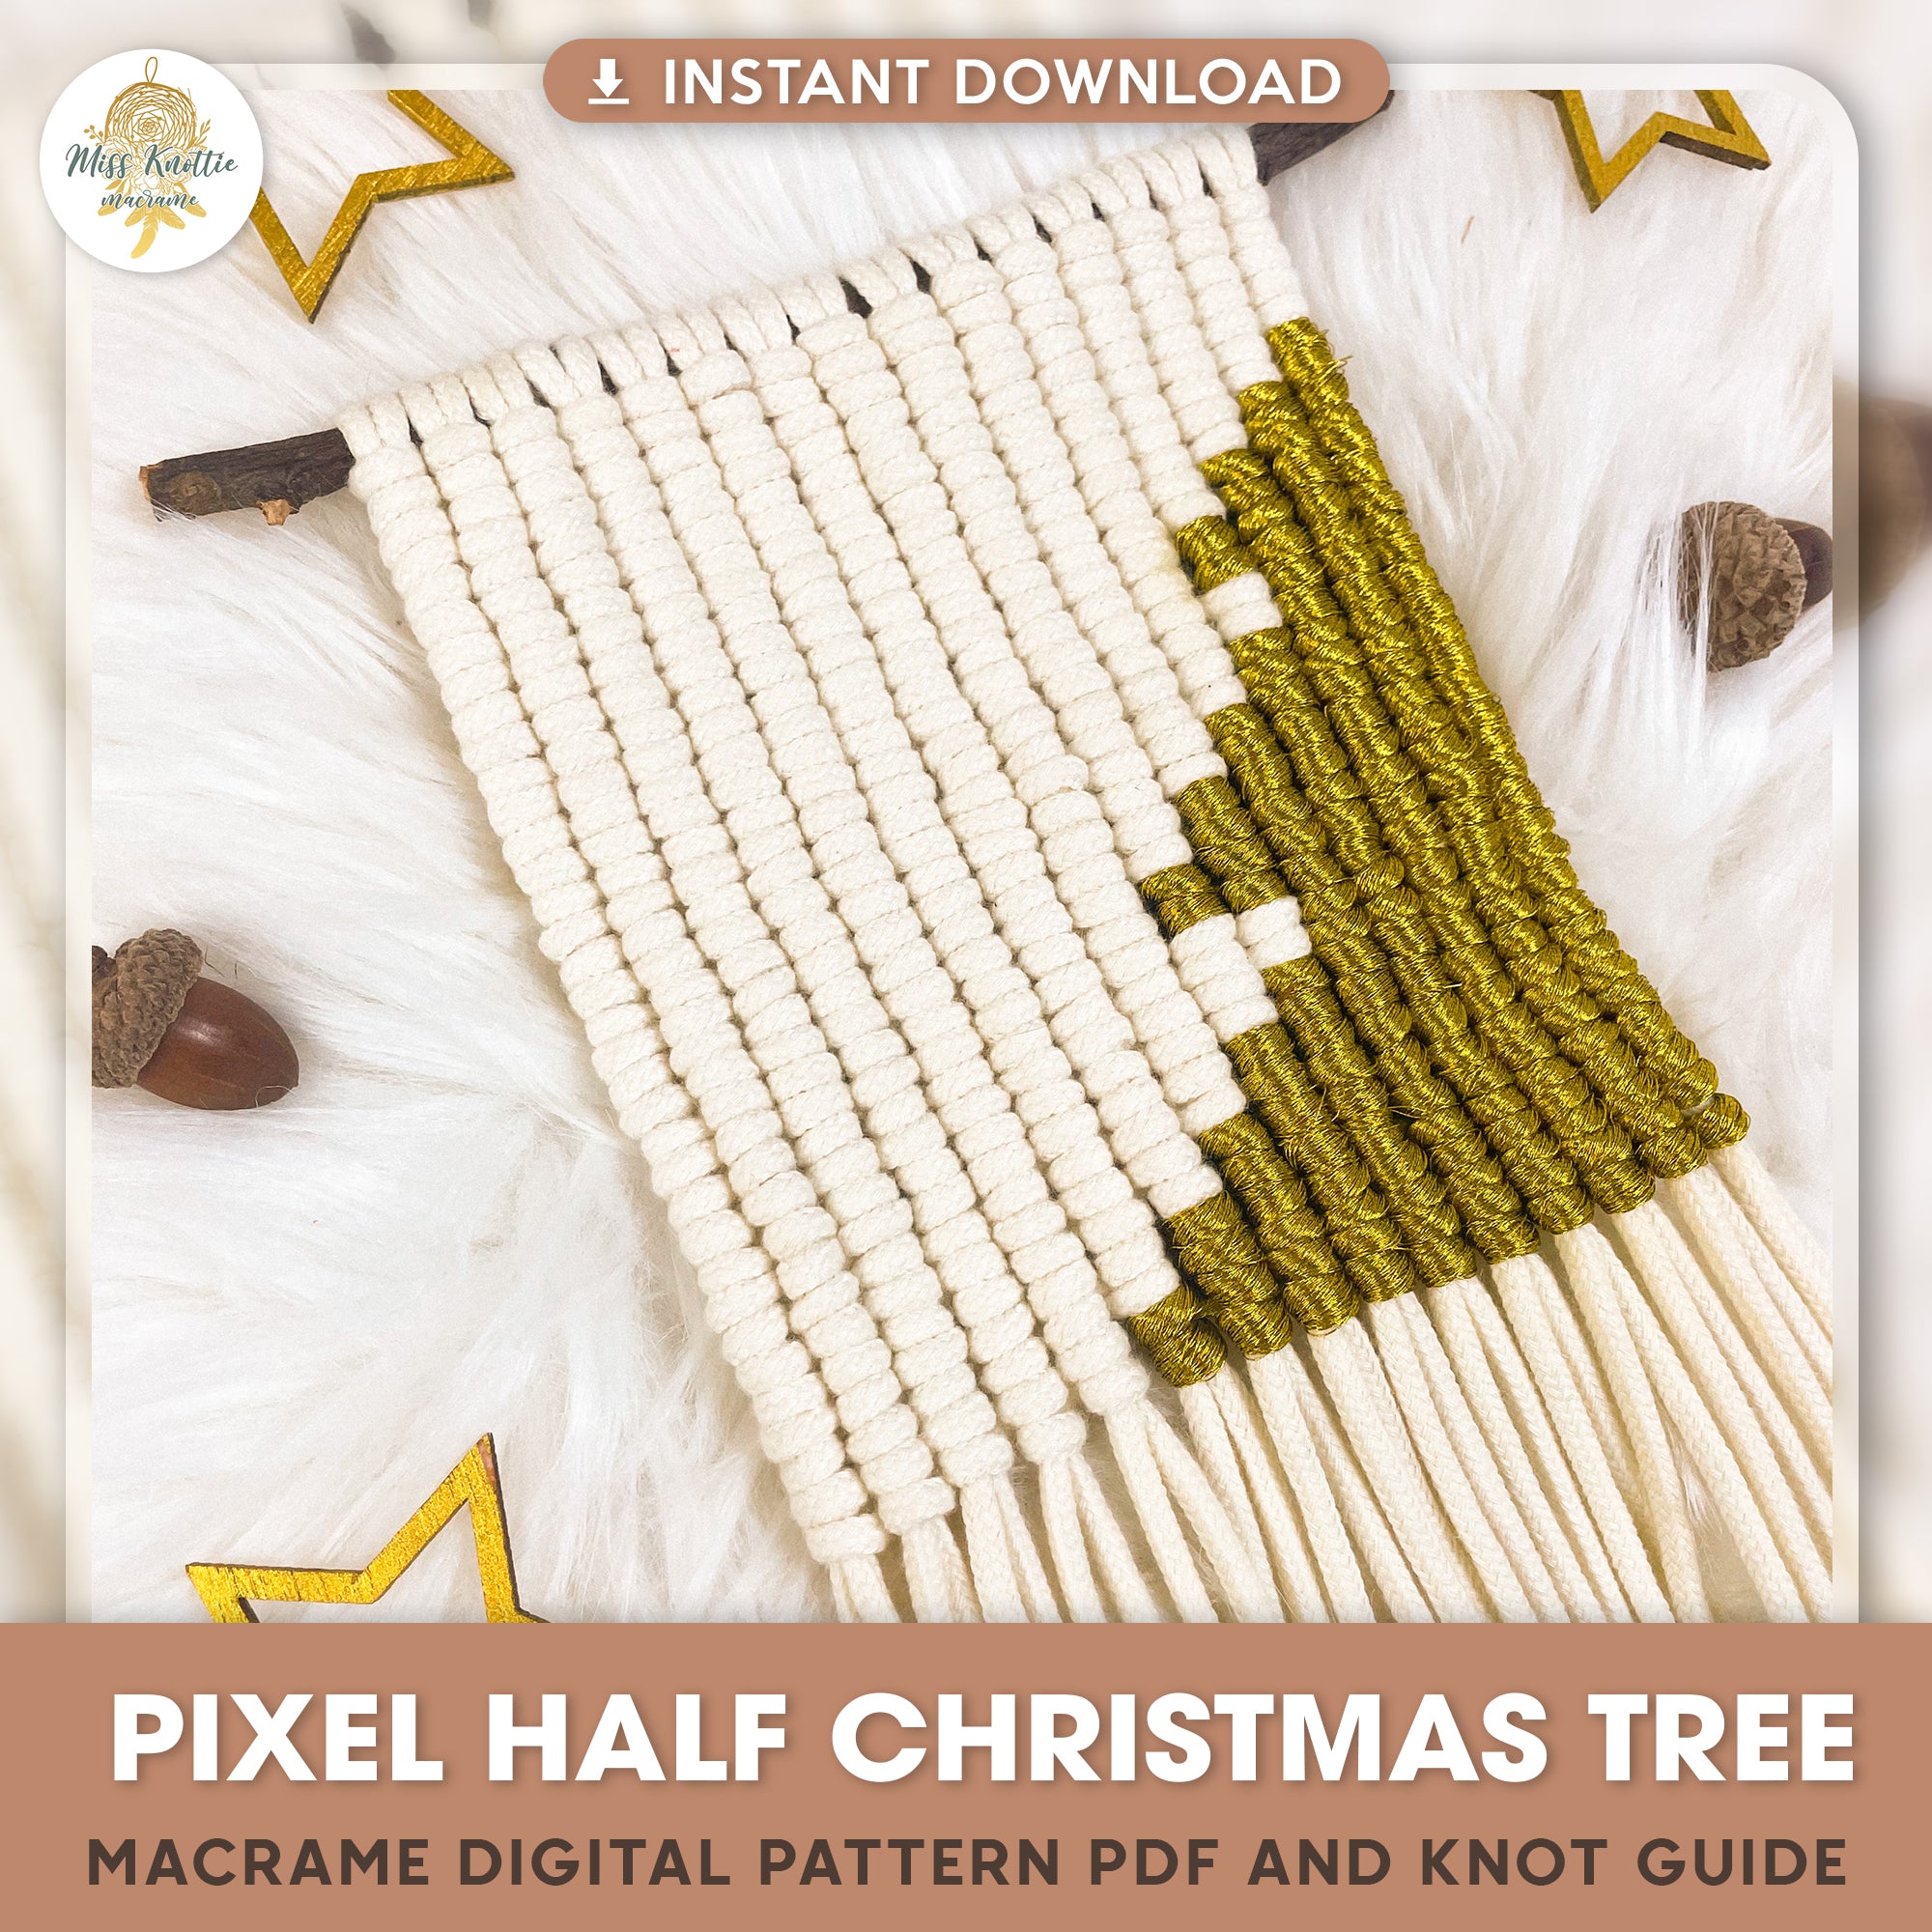 Halbes Weihnachtsbaum-Pixel muster-Digitale PDF-und Knauf anleitung